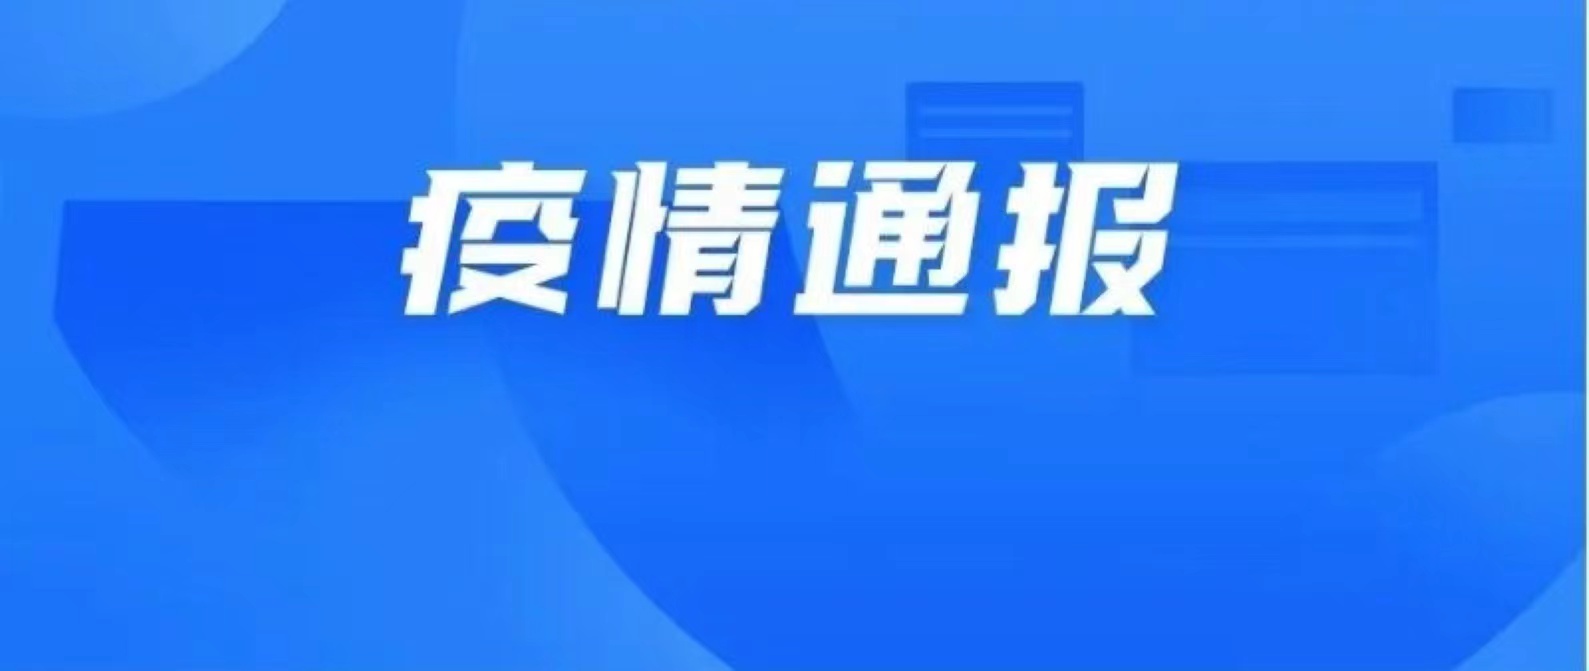 10月19日深圳新增10例确诊病例和5例无症状感染者